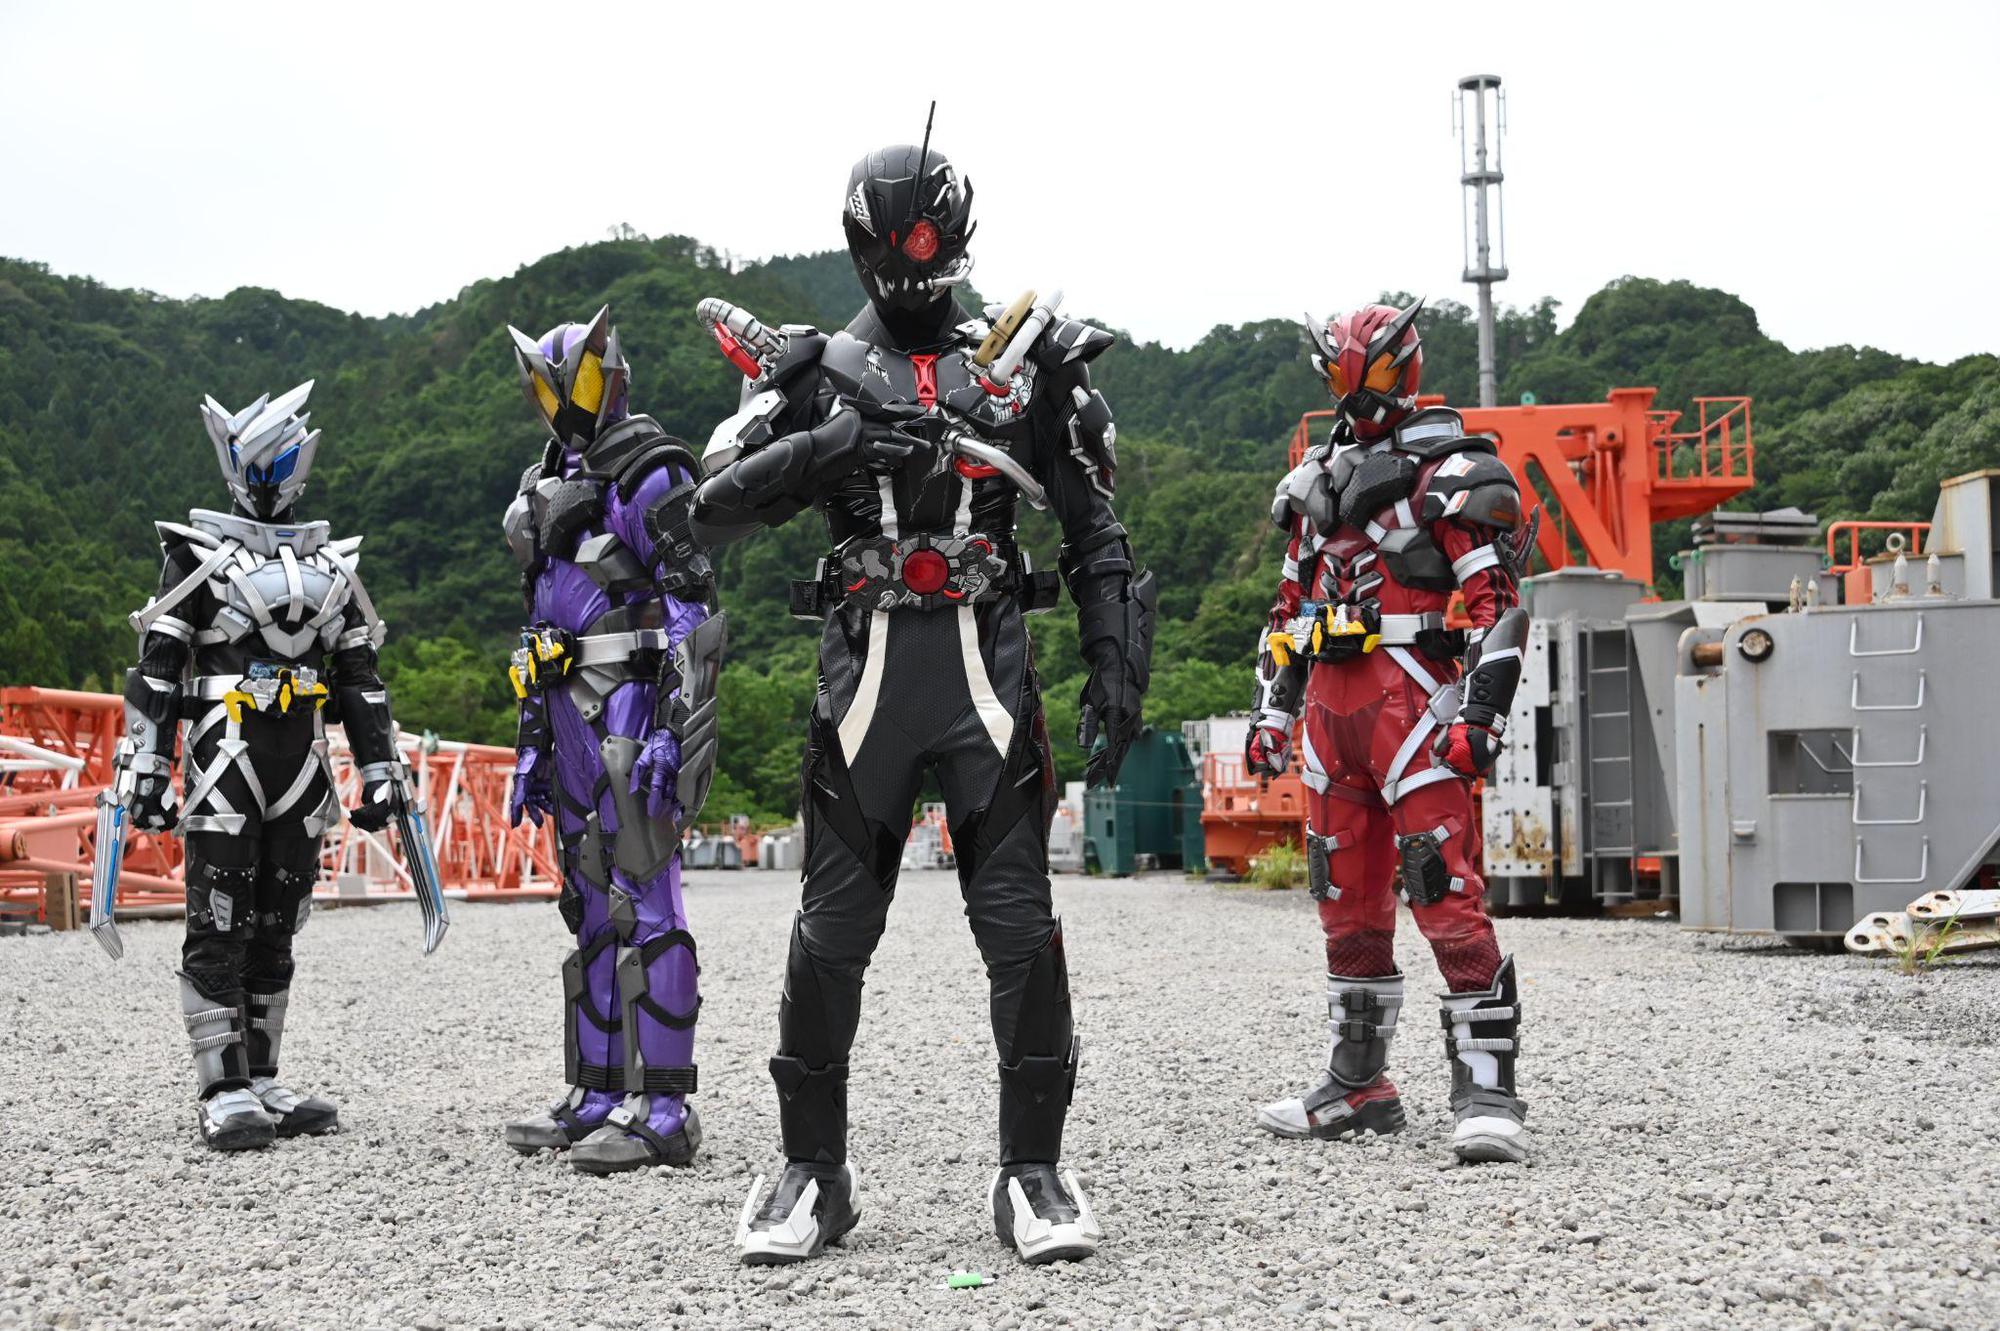 Skyline Media mua bản quyền “Kamen Rider” để công chiếu ở Việt Nam - Ảnh 7.